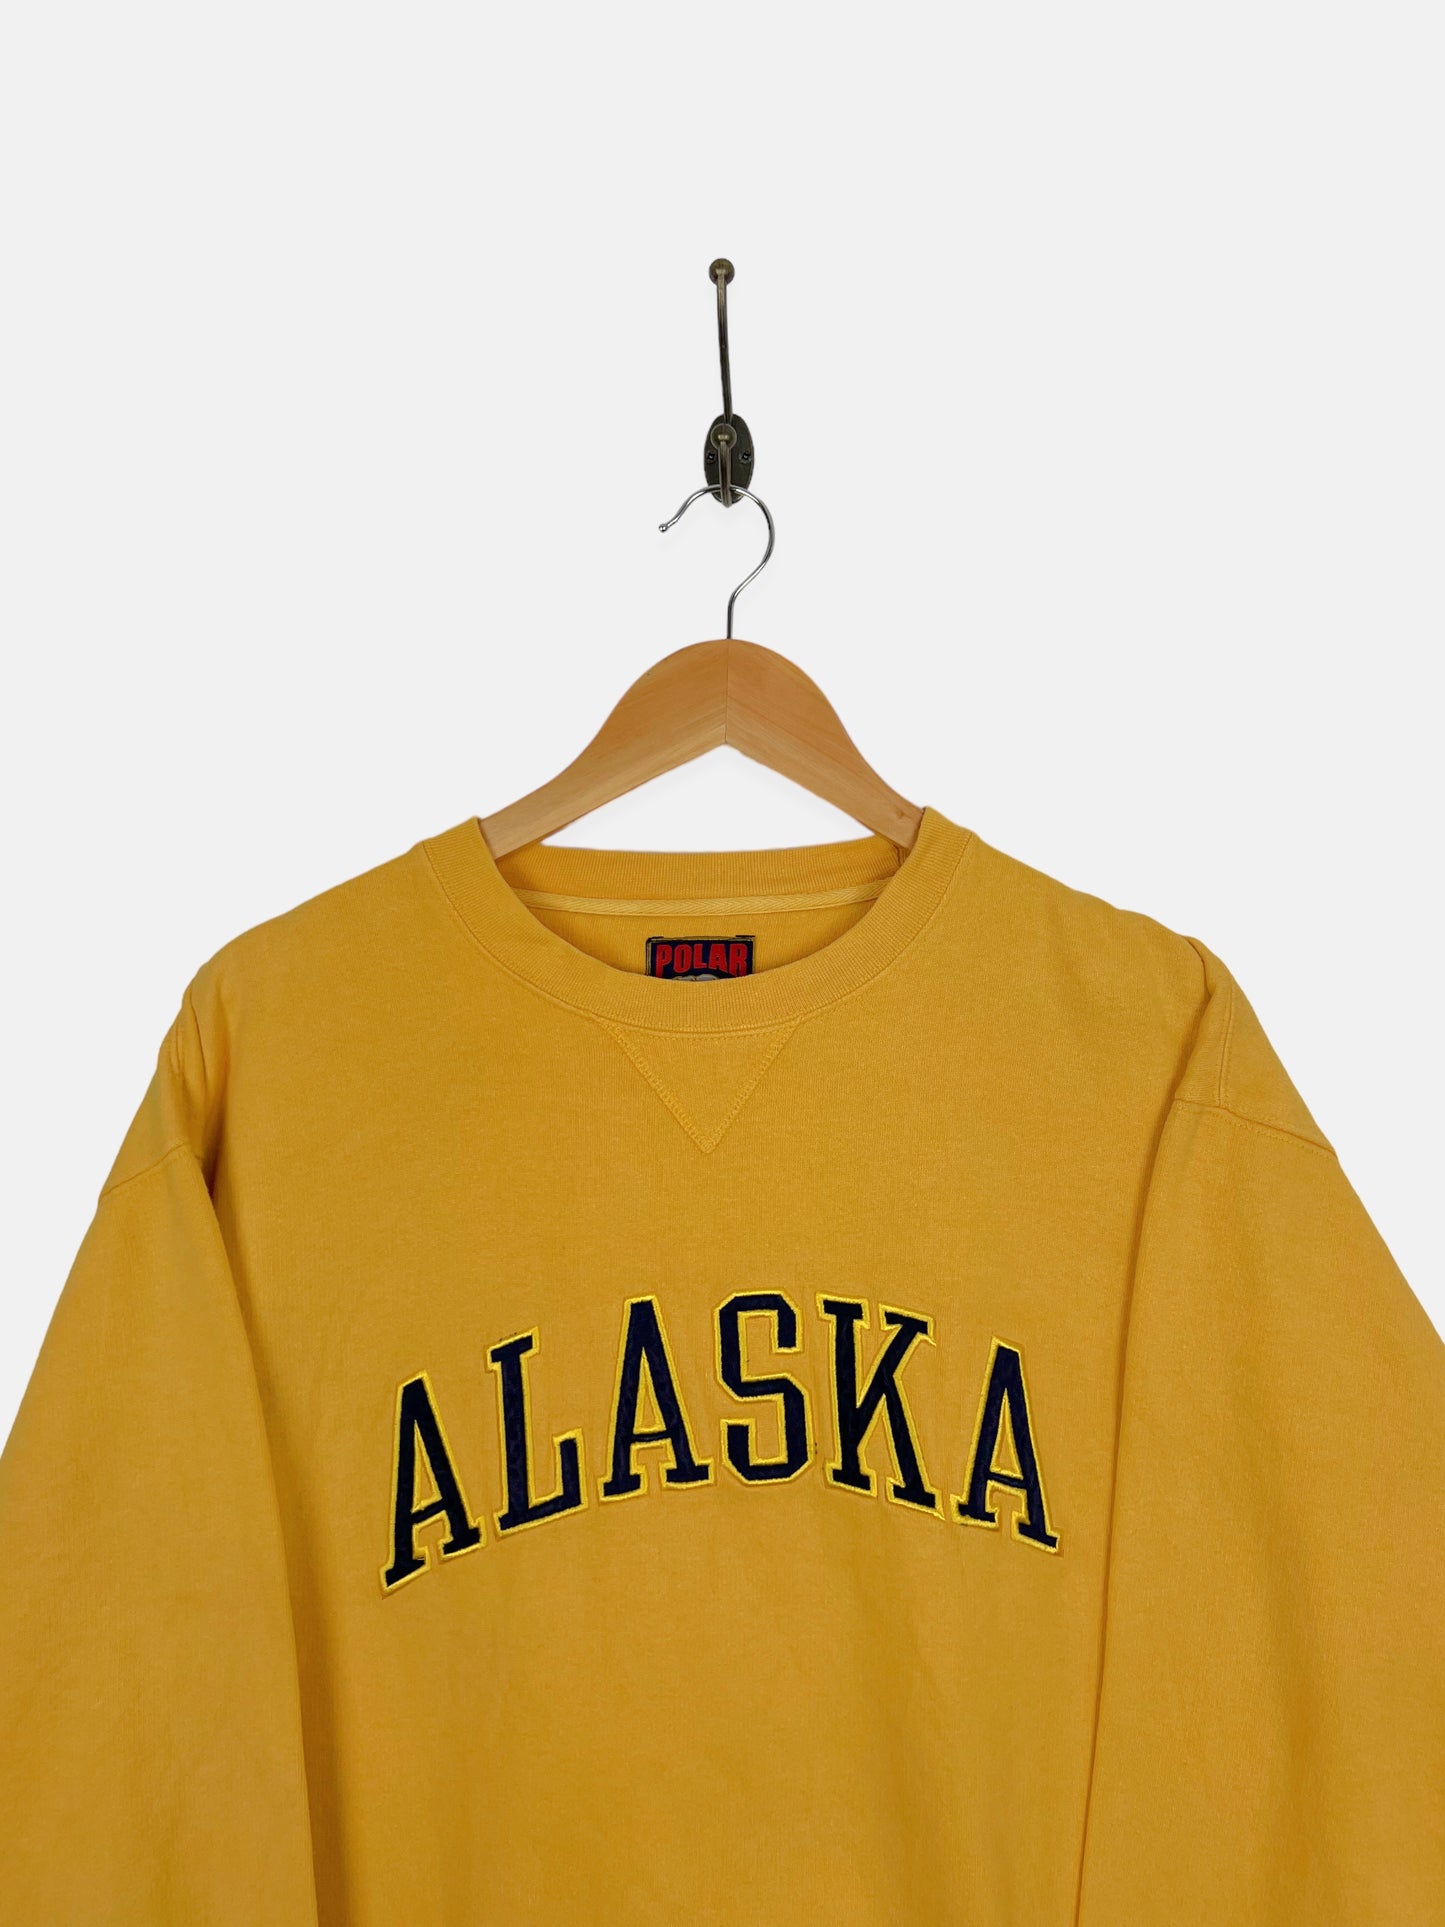 90's Alaska Embroidered Vintage Sweatshirt Size 12-14